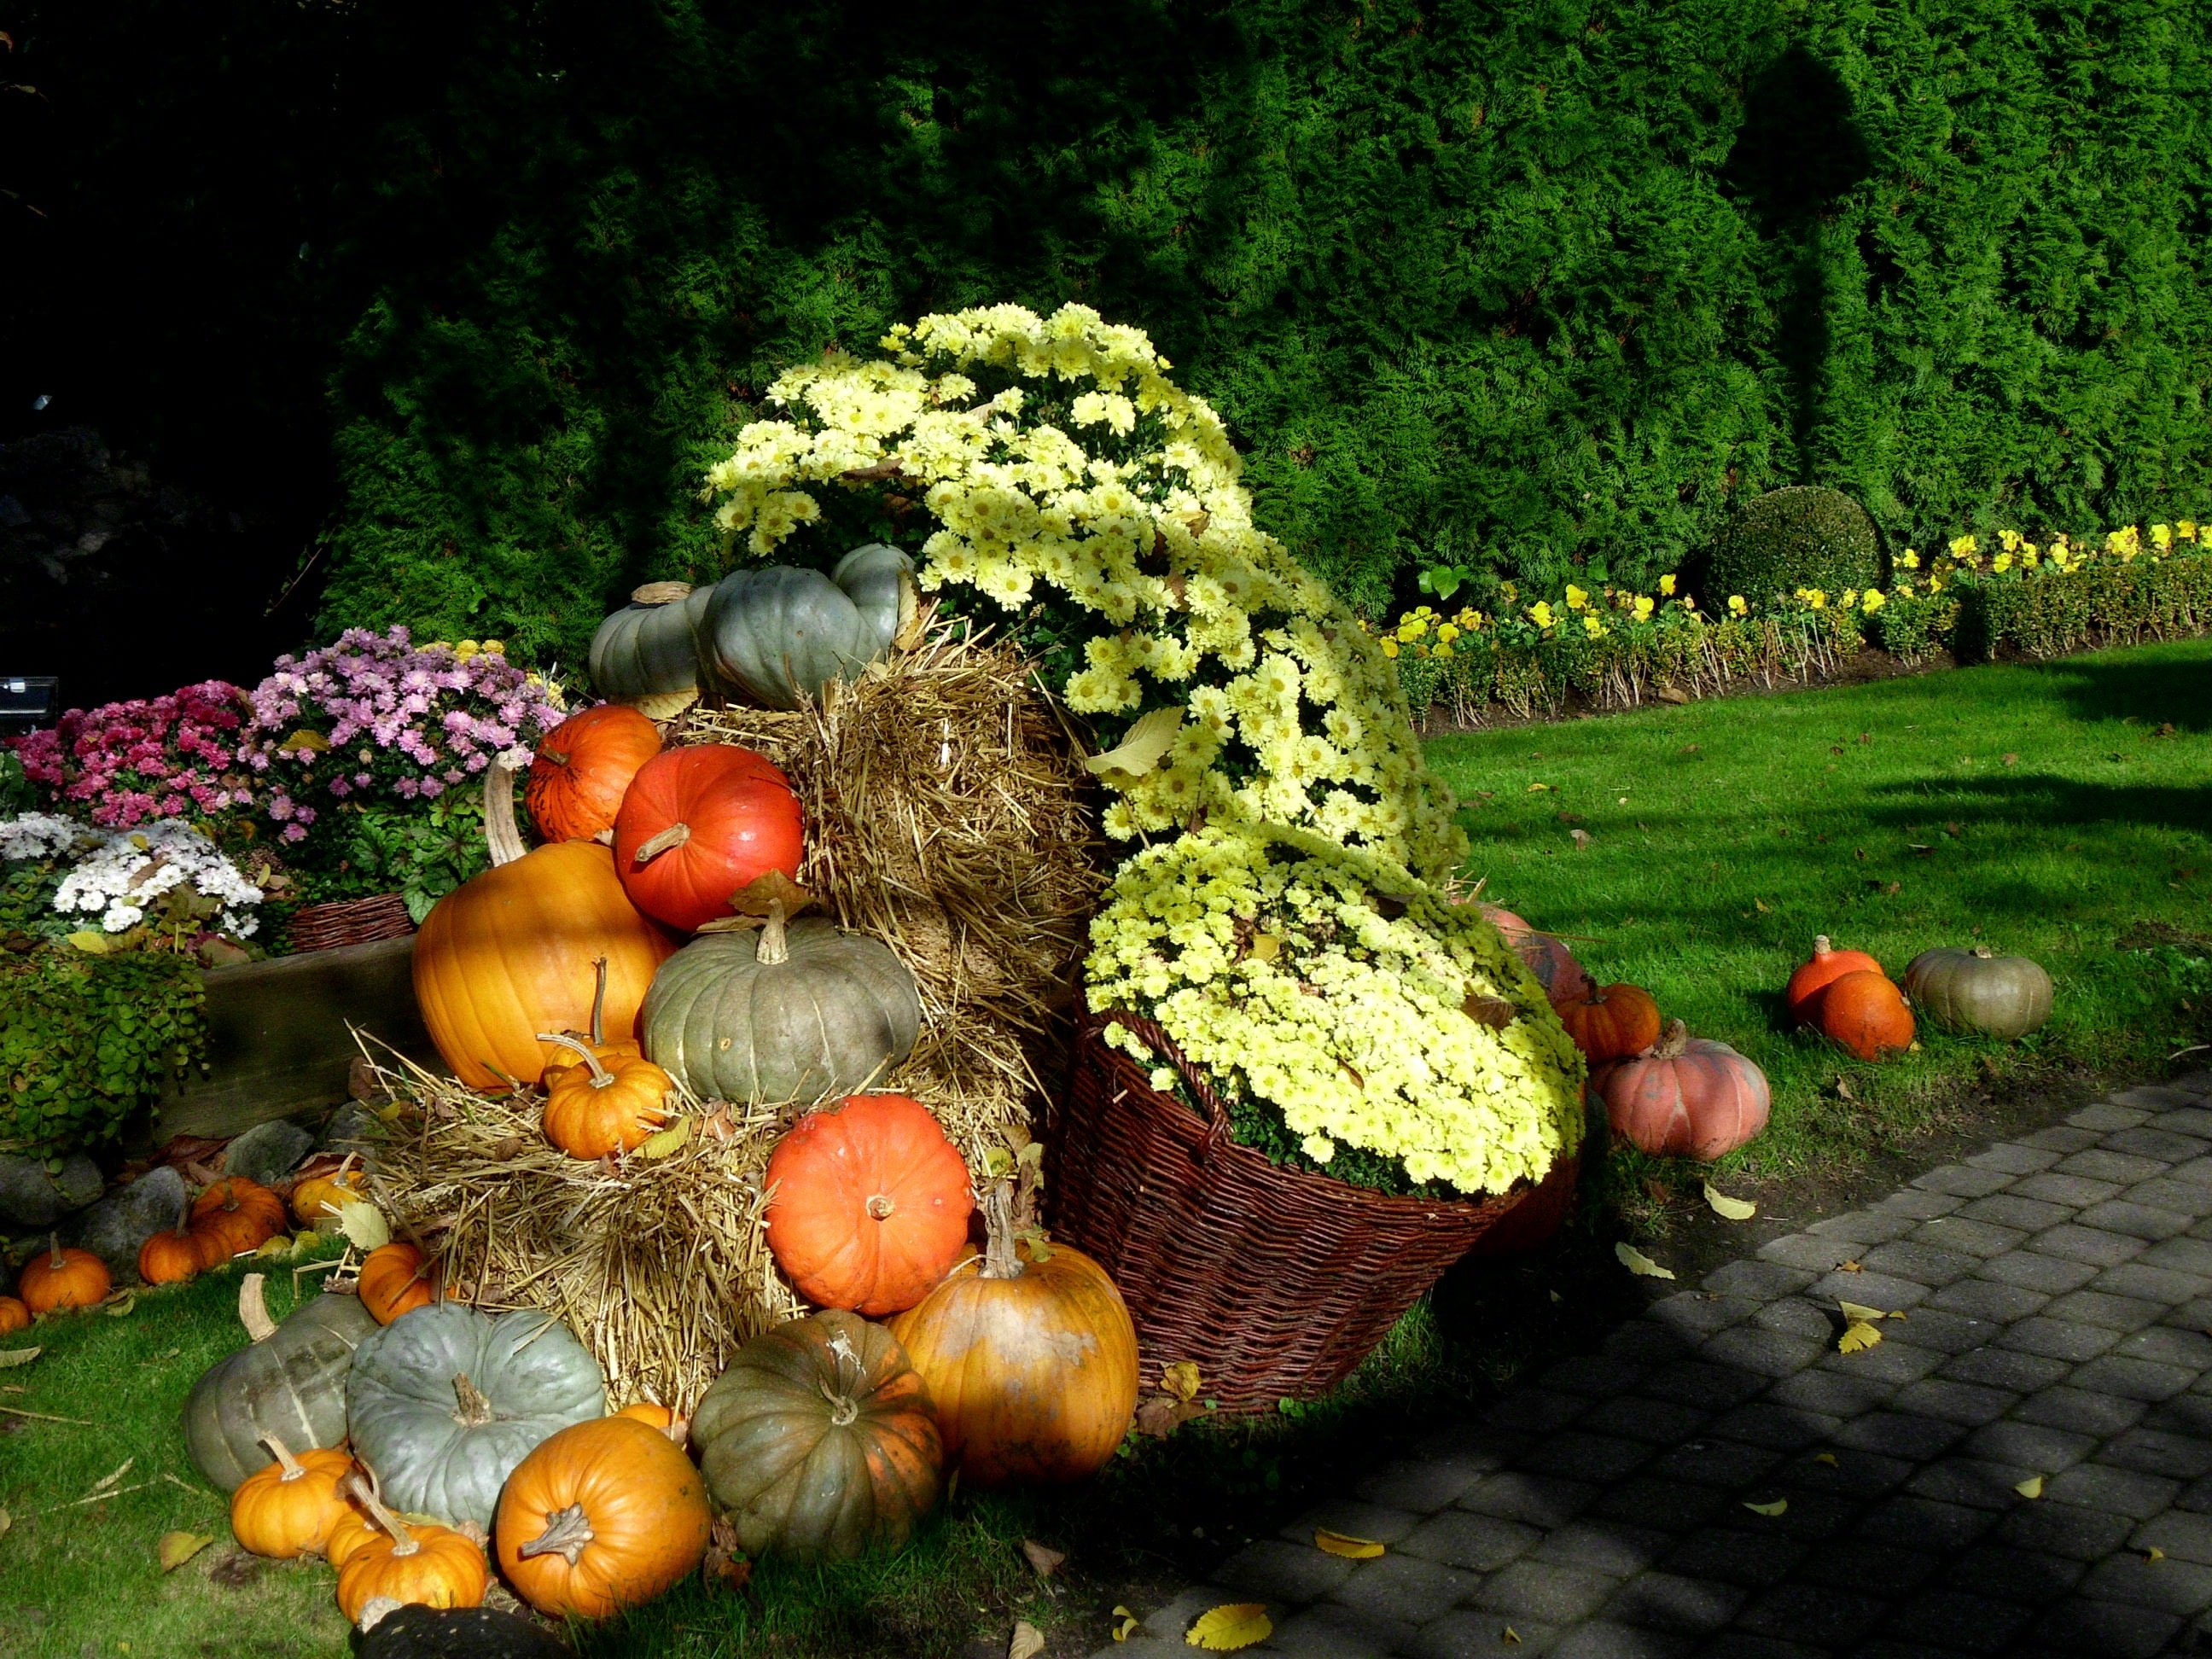 Harvest, Thanksgiving, Autumn, Pumpkin, pumpkin, food and drink